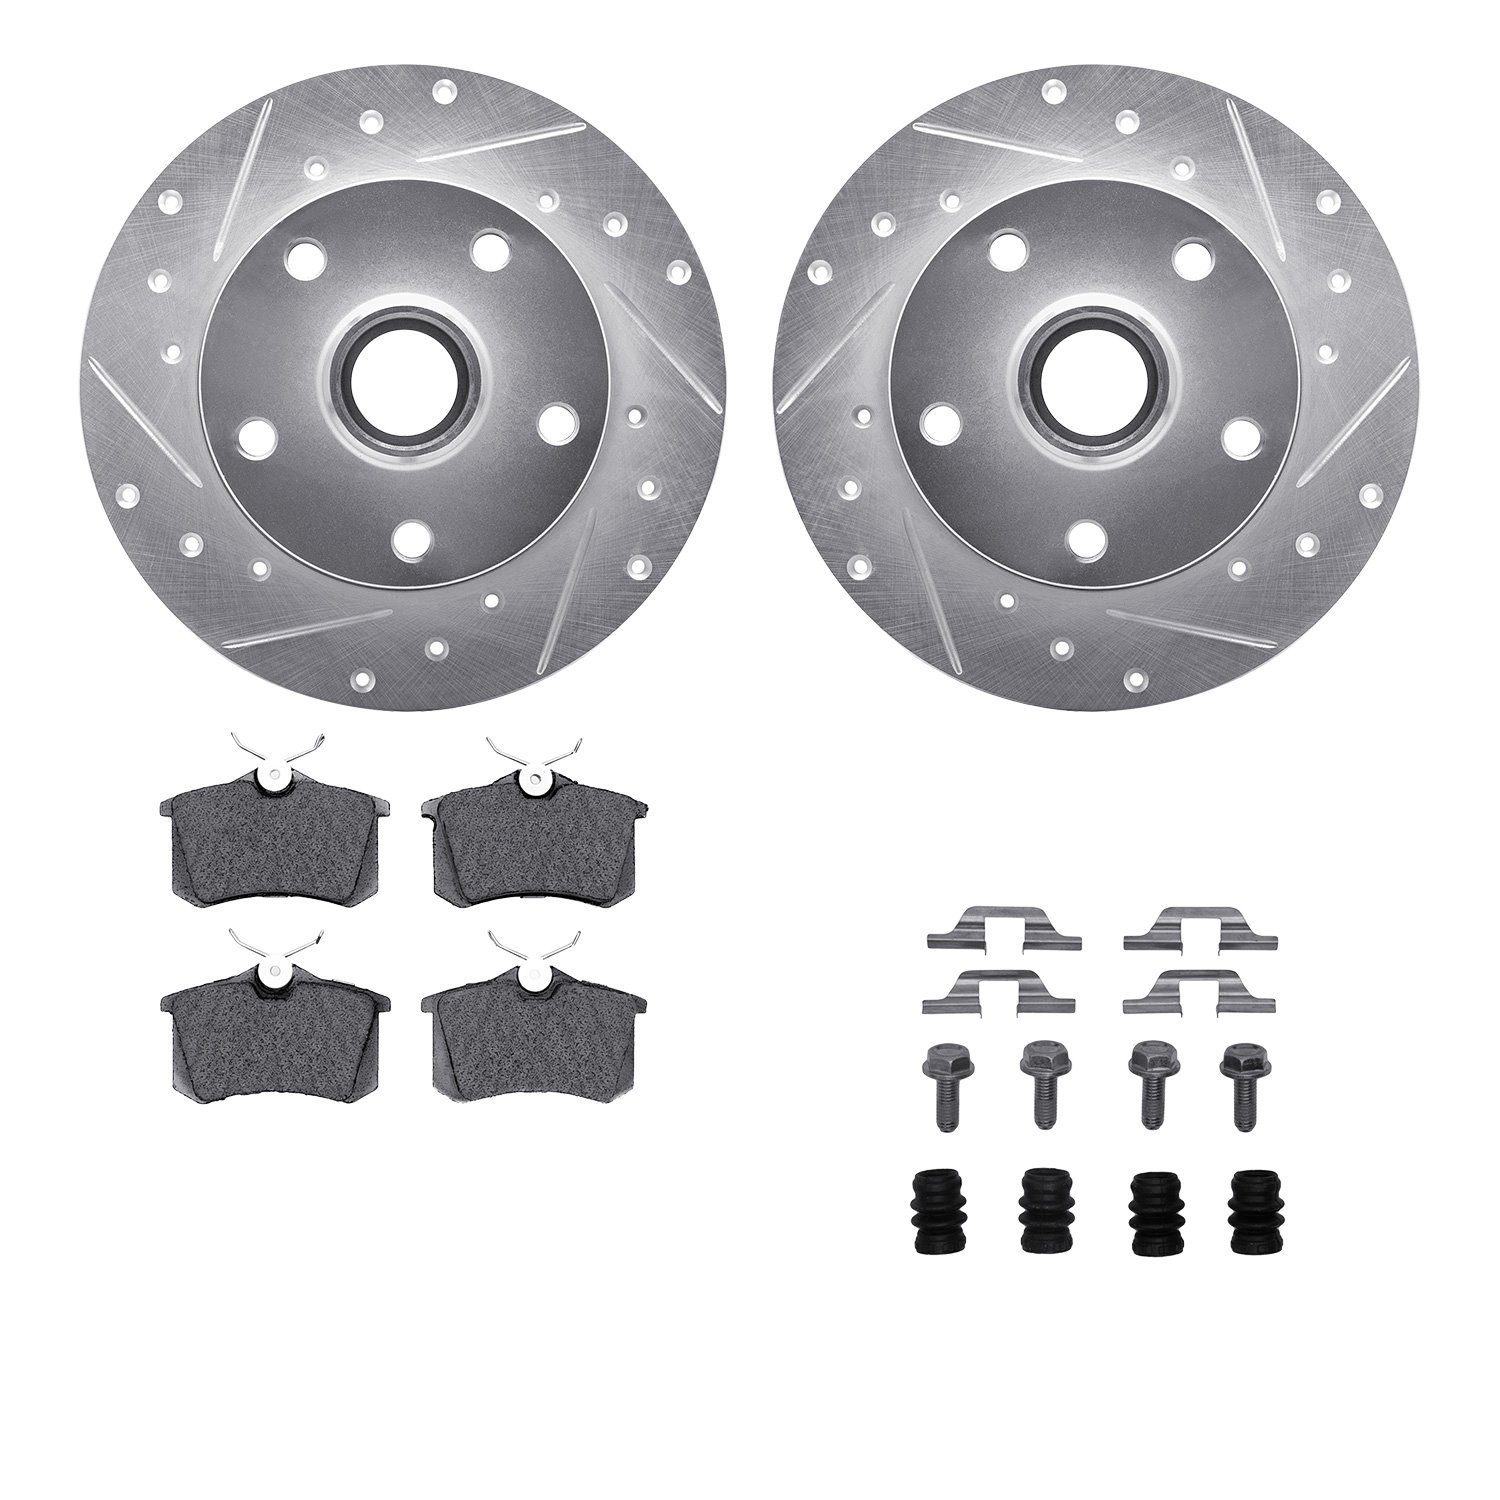 7612-73018 Drilled/Slotted Brake Rotors w/5000 Euro Ceramic Brake Pads Kit & Hardware [Silver], 2000-2008 Audi/Volkswagen, Posit